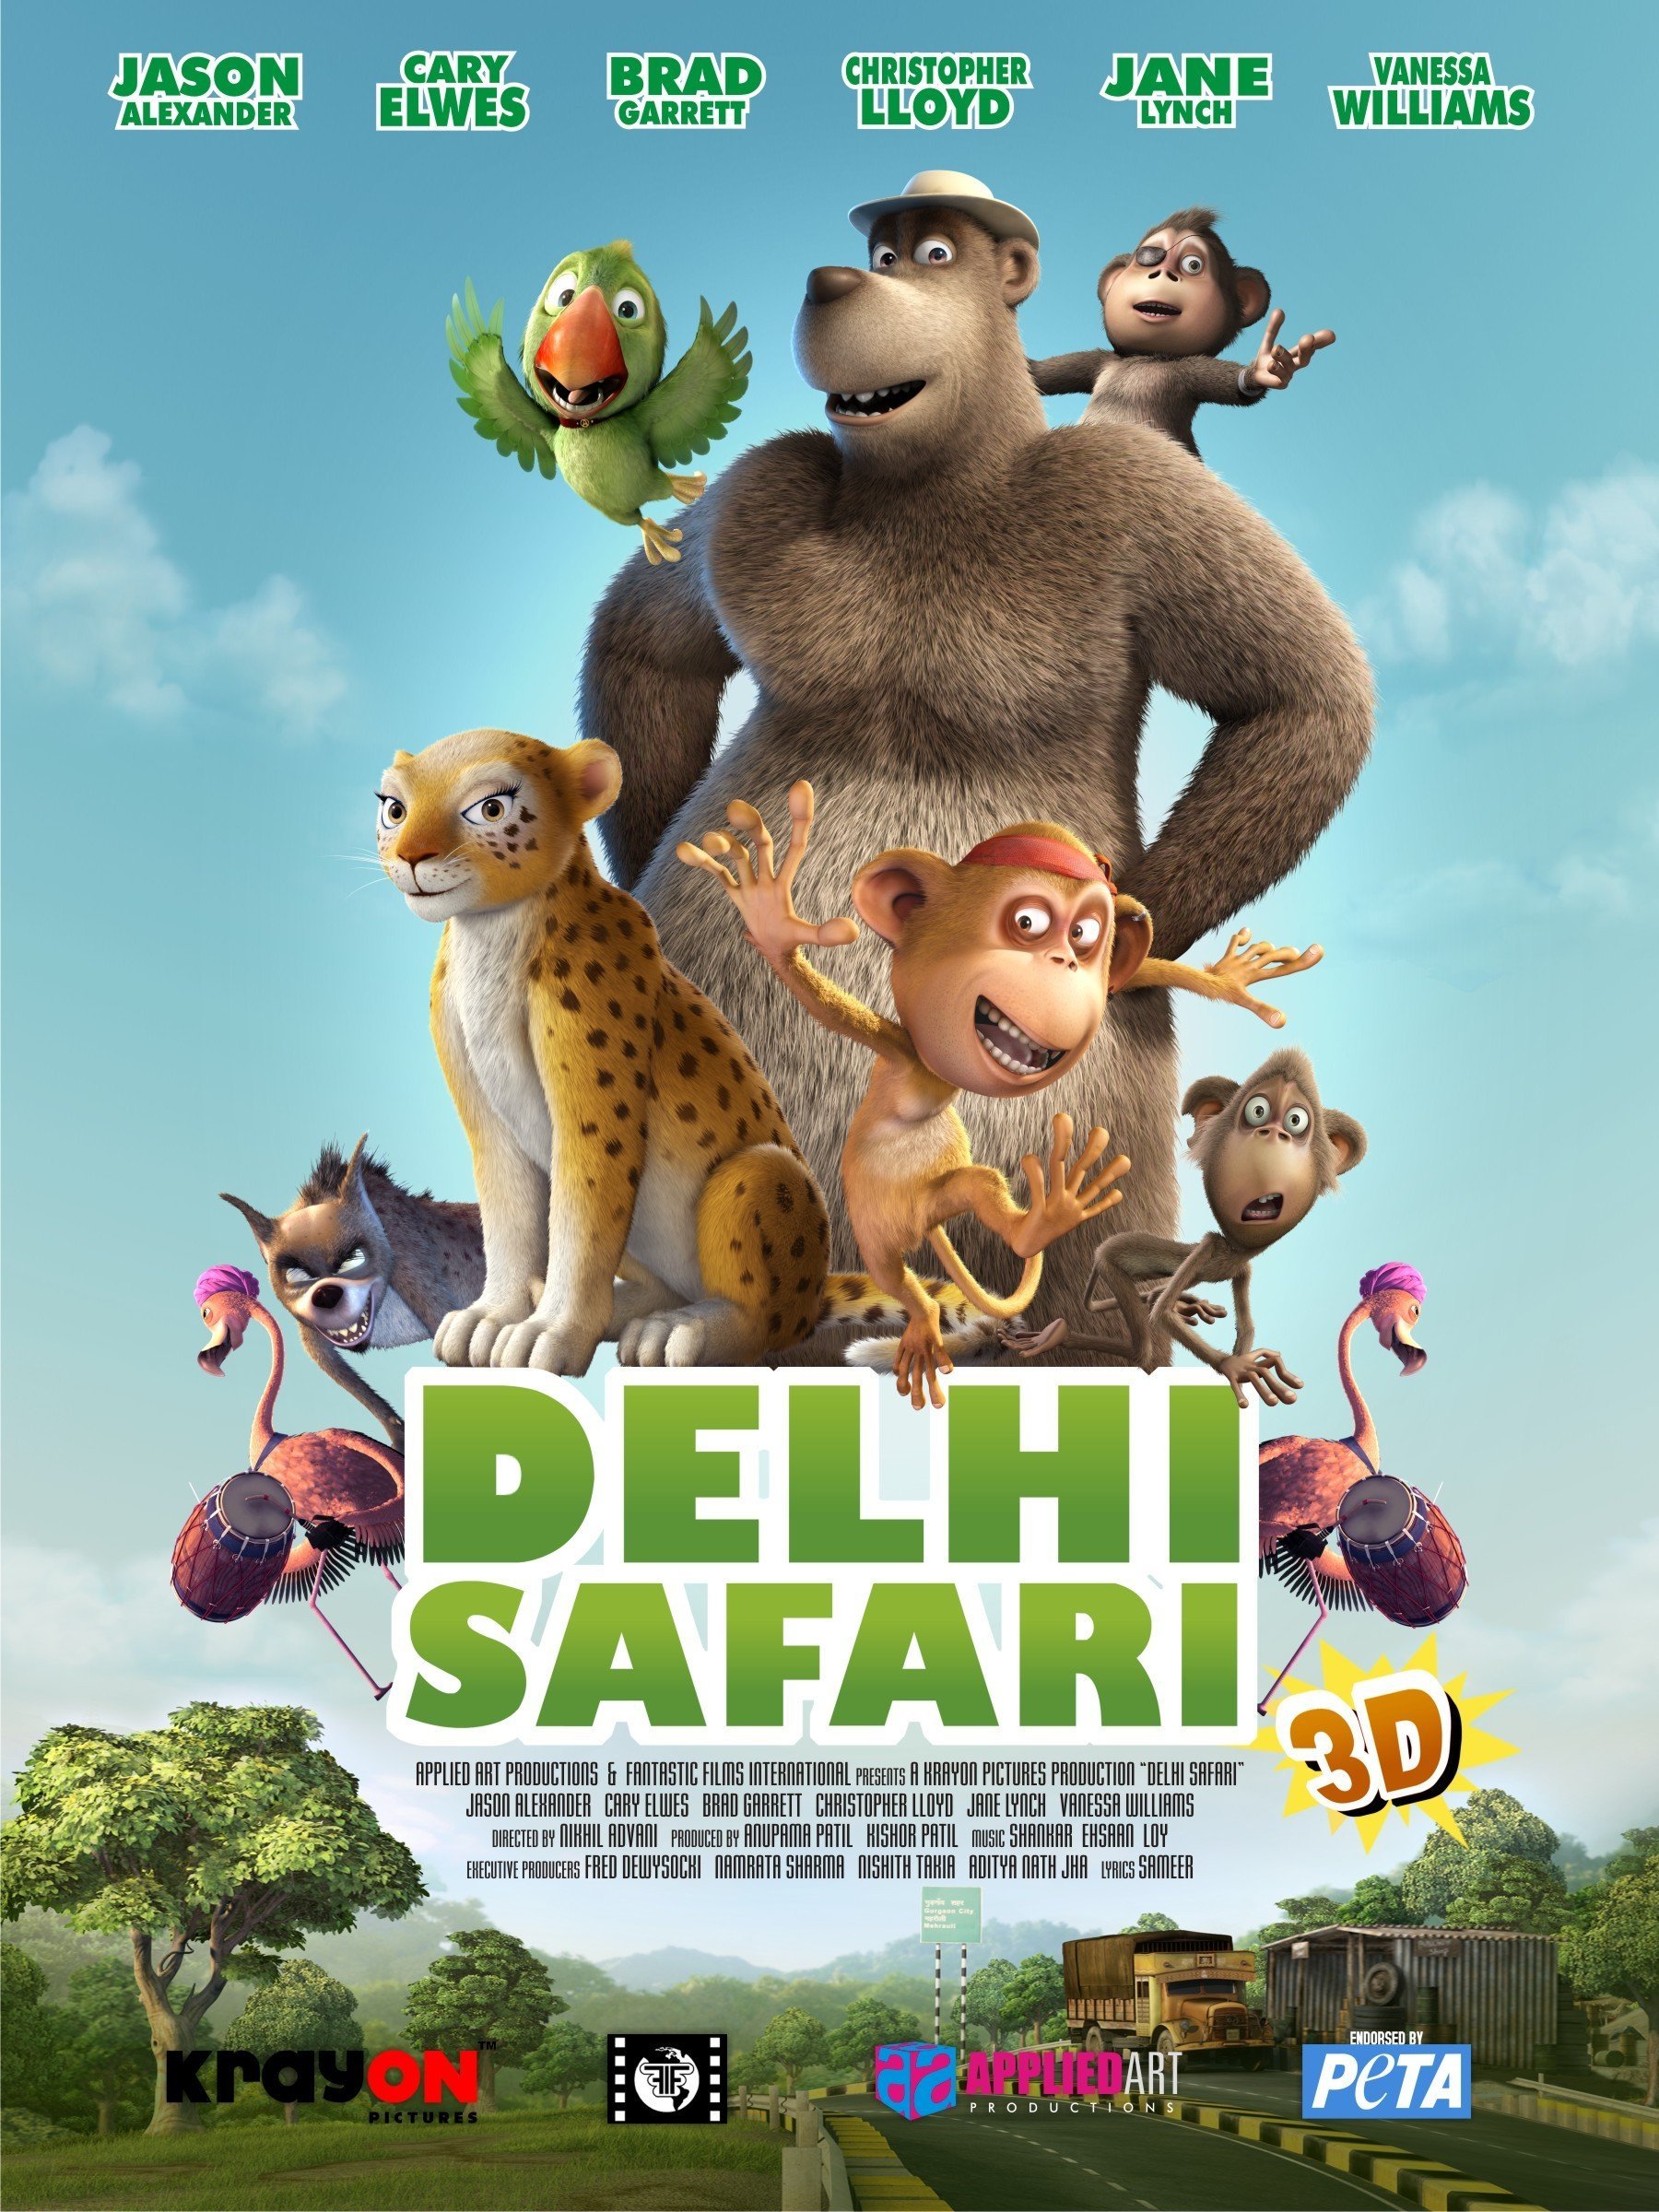 delhi safari screencaps